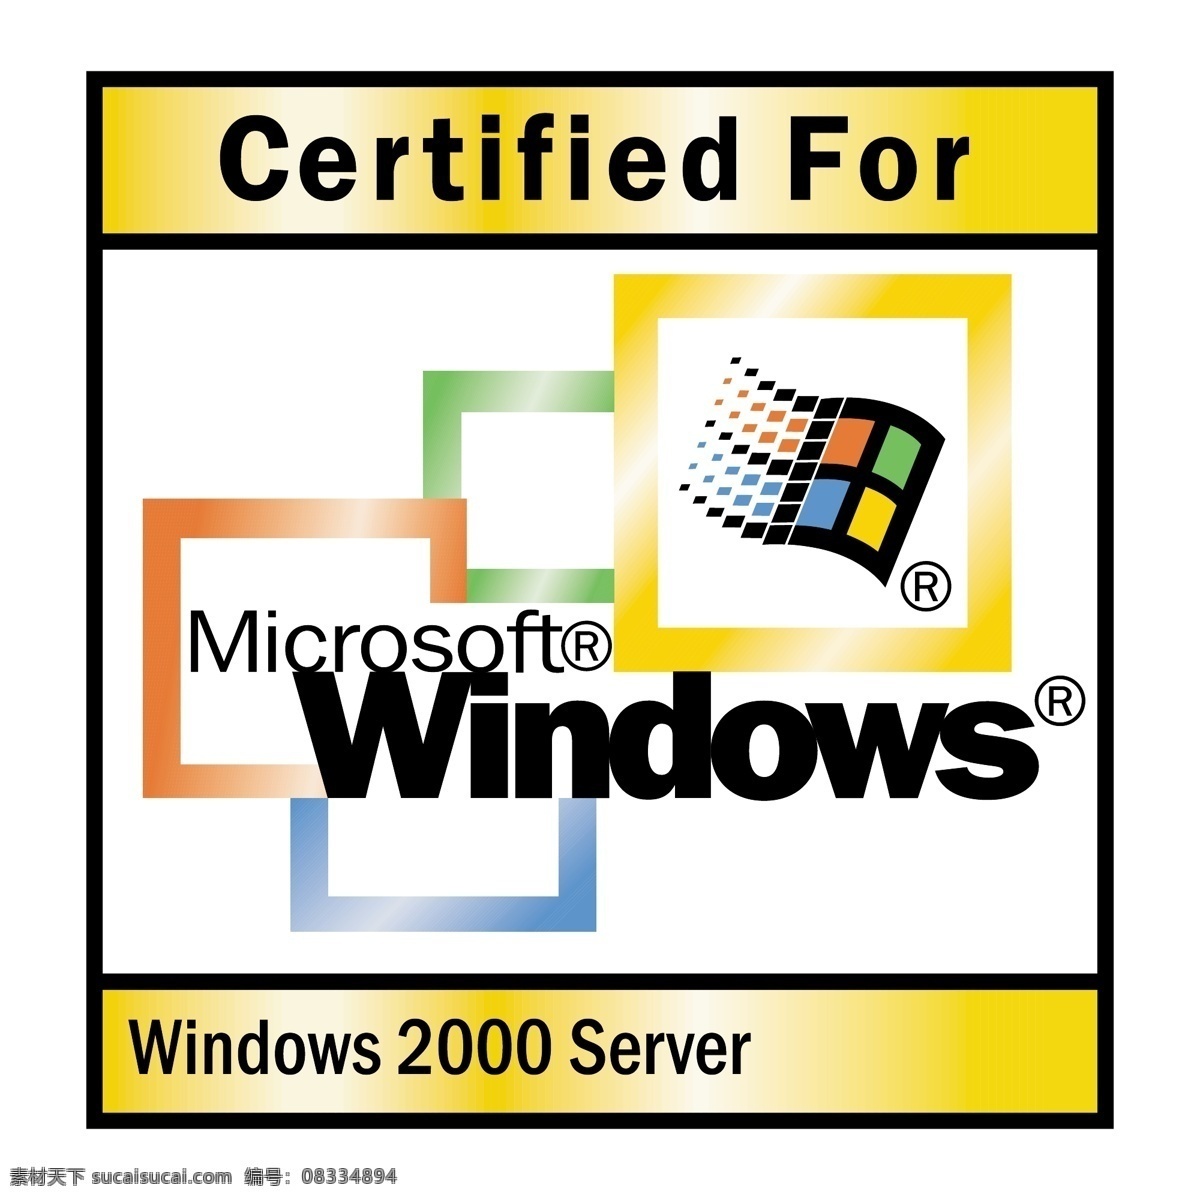 2000 服务器 微软 windows 矢量 server 免费 徽标 标志 矢量图 建筑家居